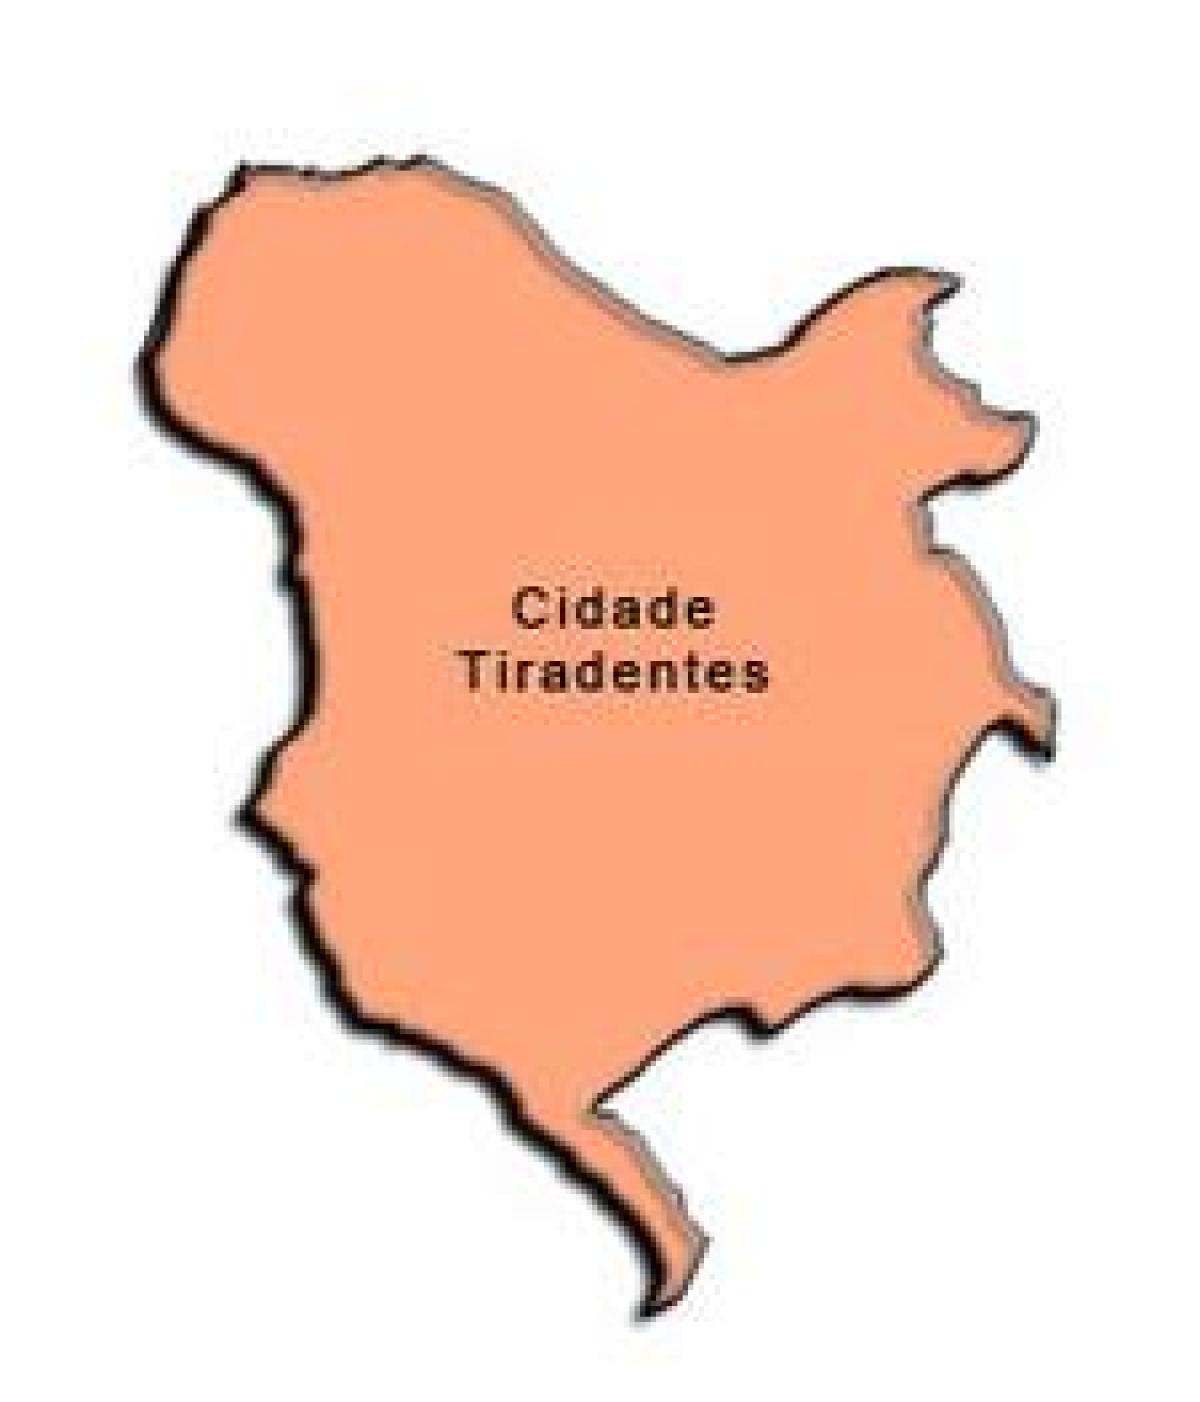 Kort over Cidade Tiradentes-sub-præfekturet